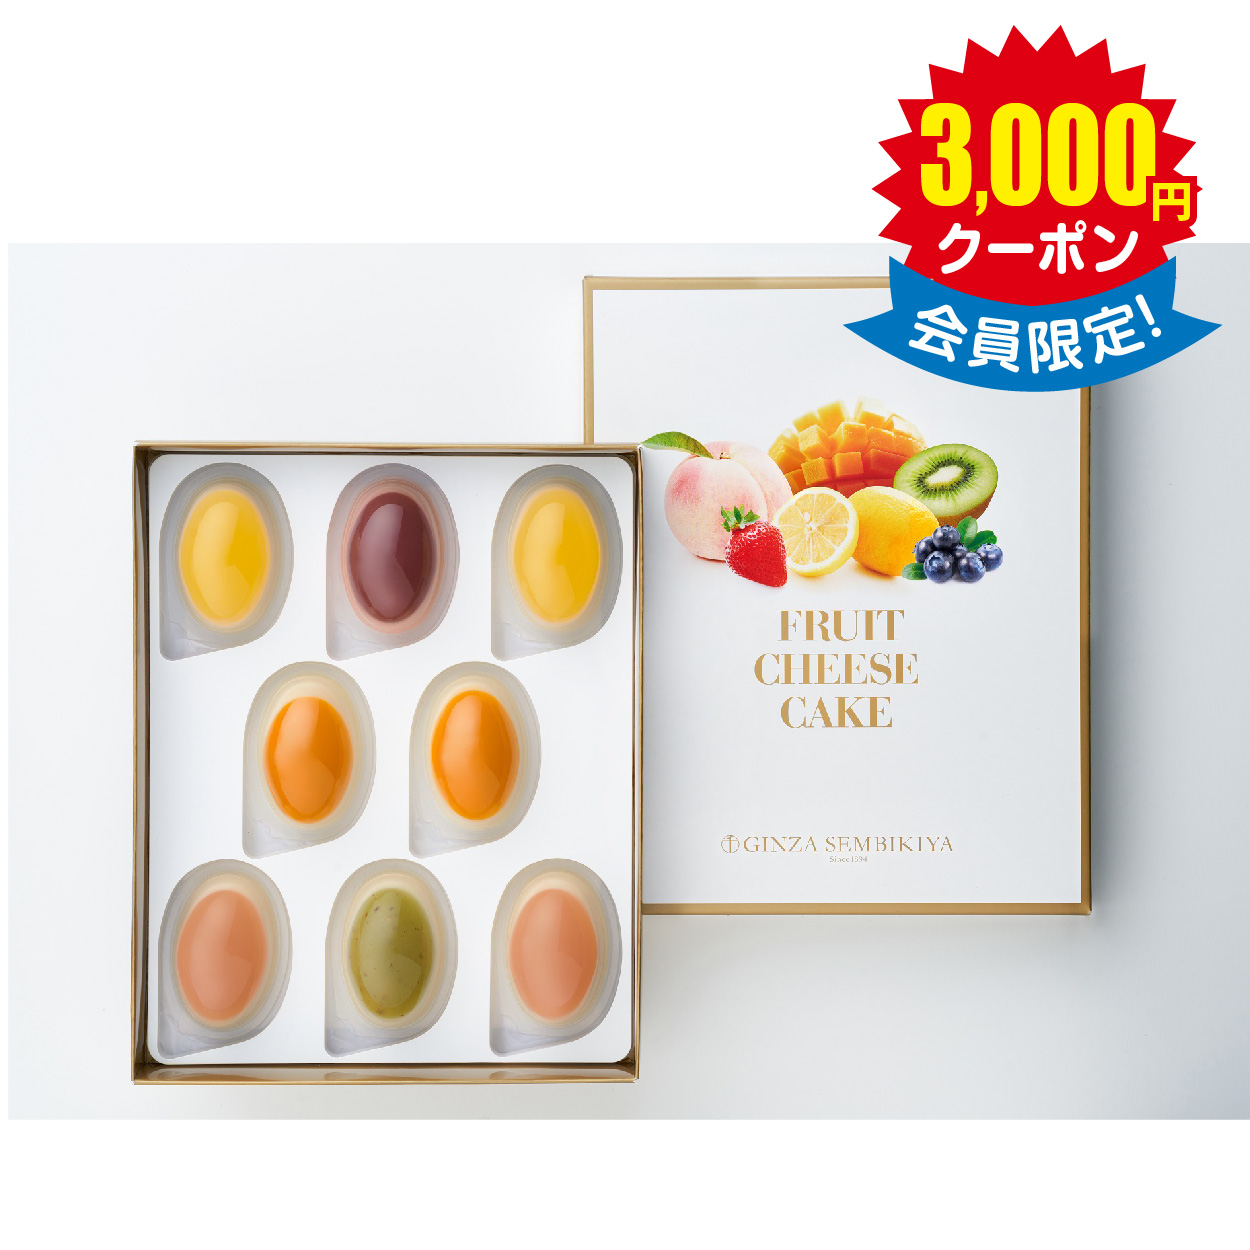 「銀座千疋屋」 銀座フルーツチーズケーキ × 12箱